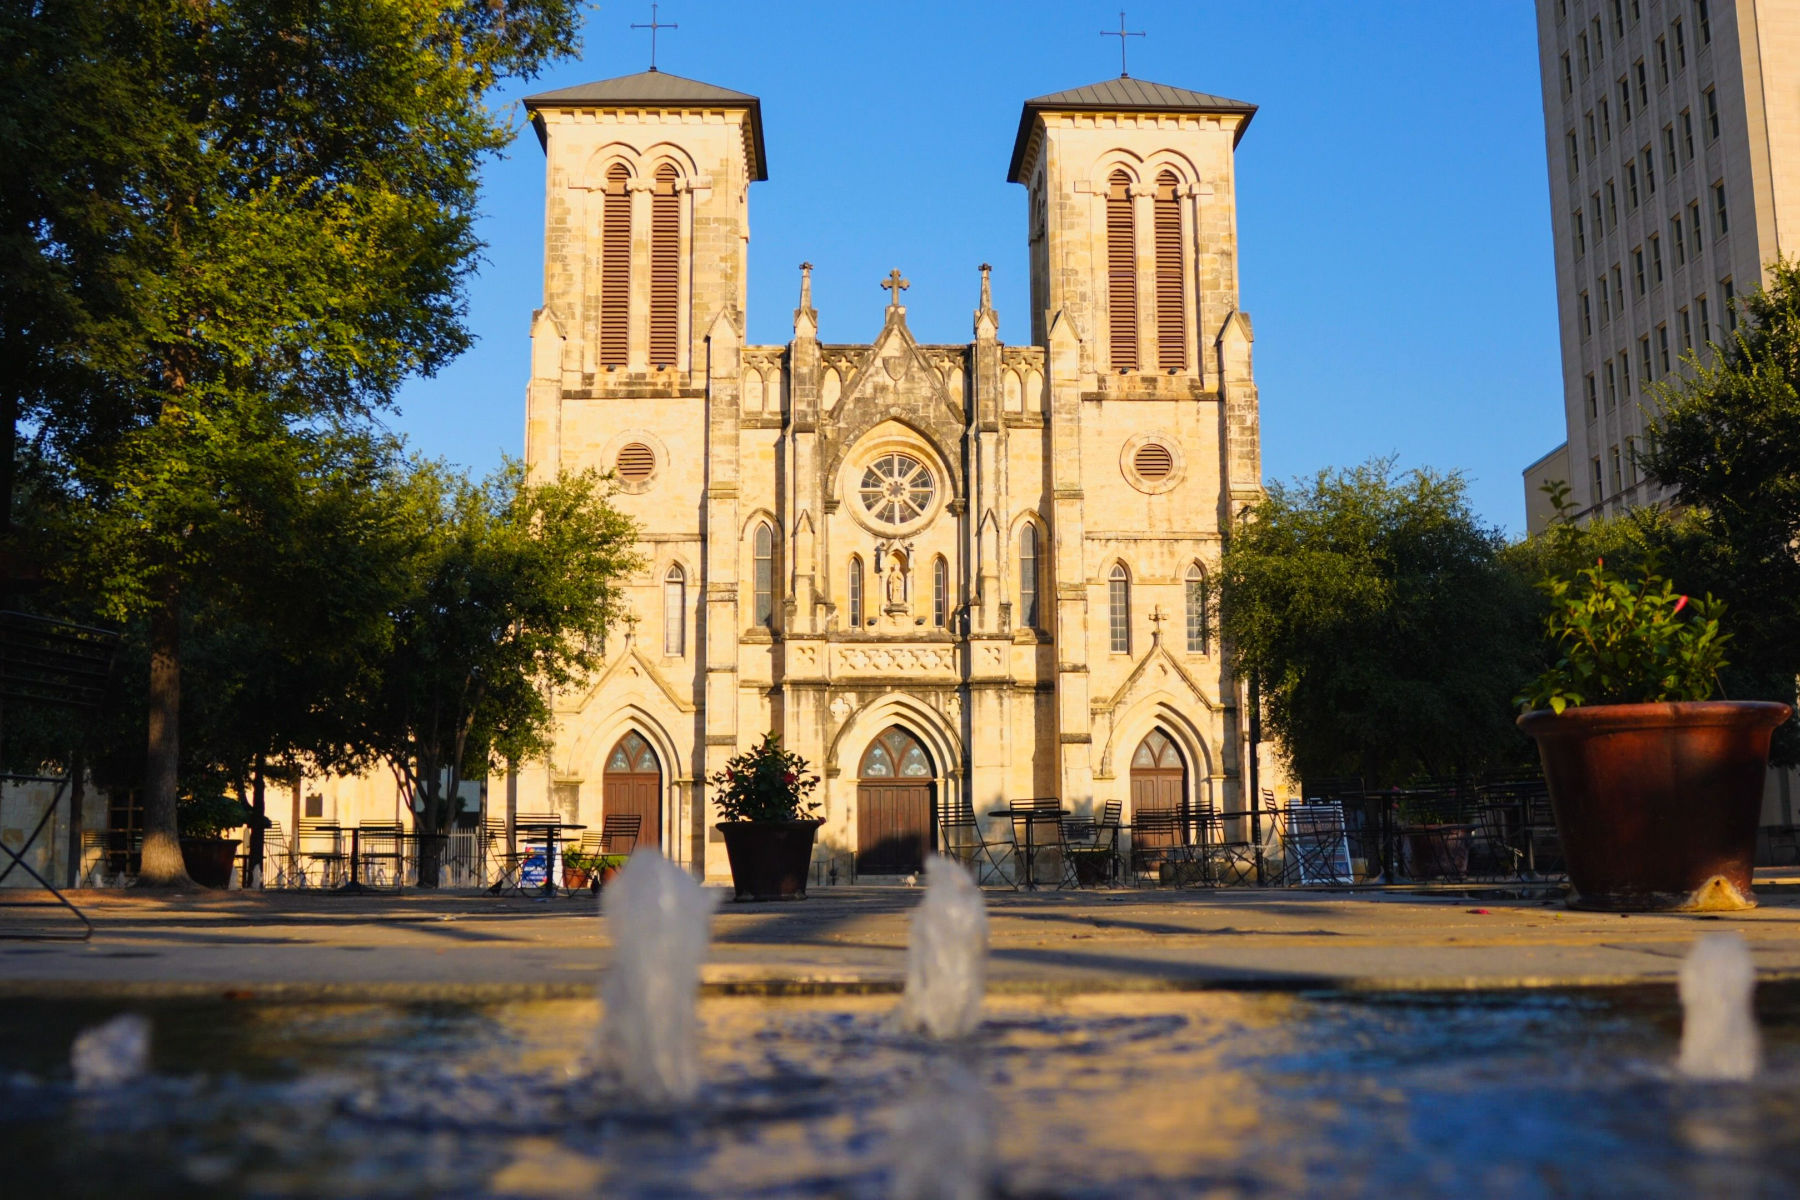 San Antonio Landmarks